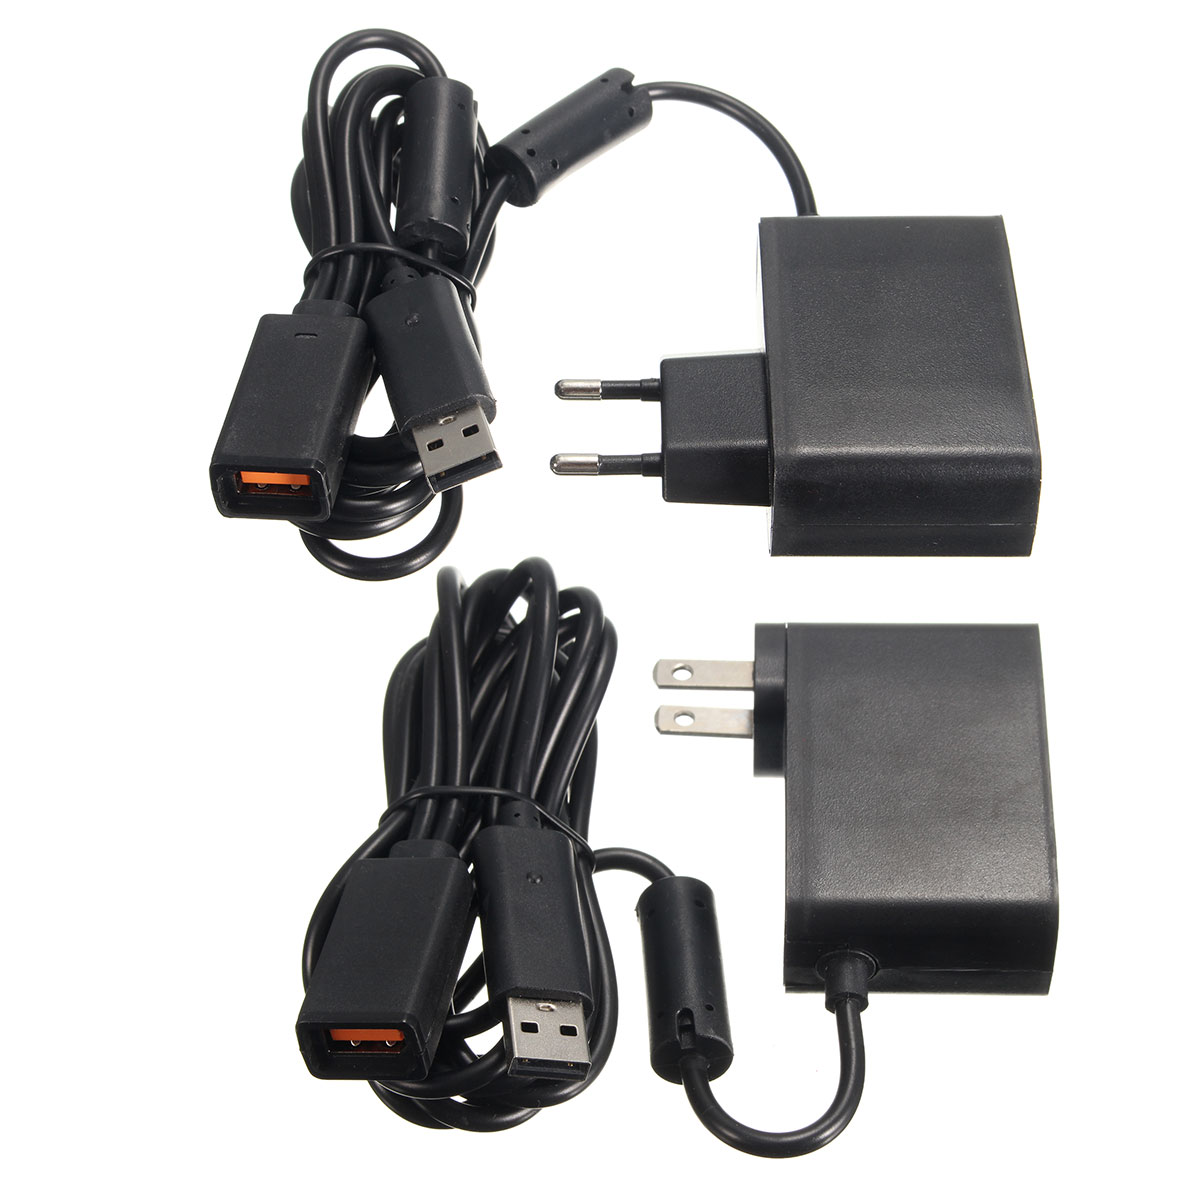 2.3m USB AC Adapter Power Supply Cable for Xbox 360 Kinect Sensor EU/US Plug 11